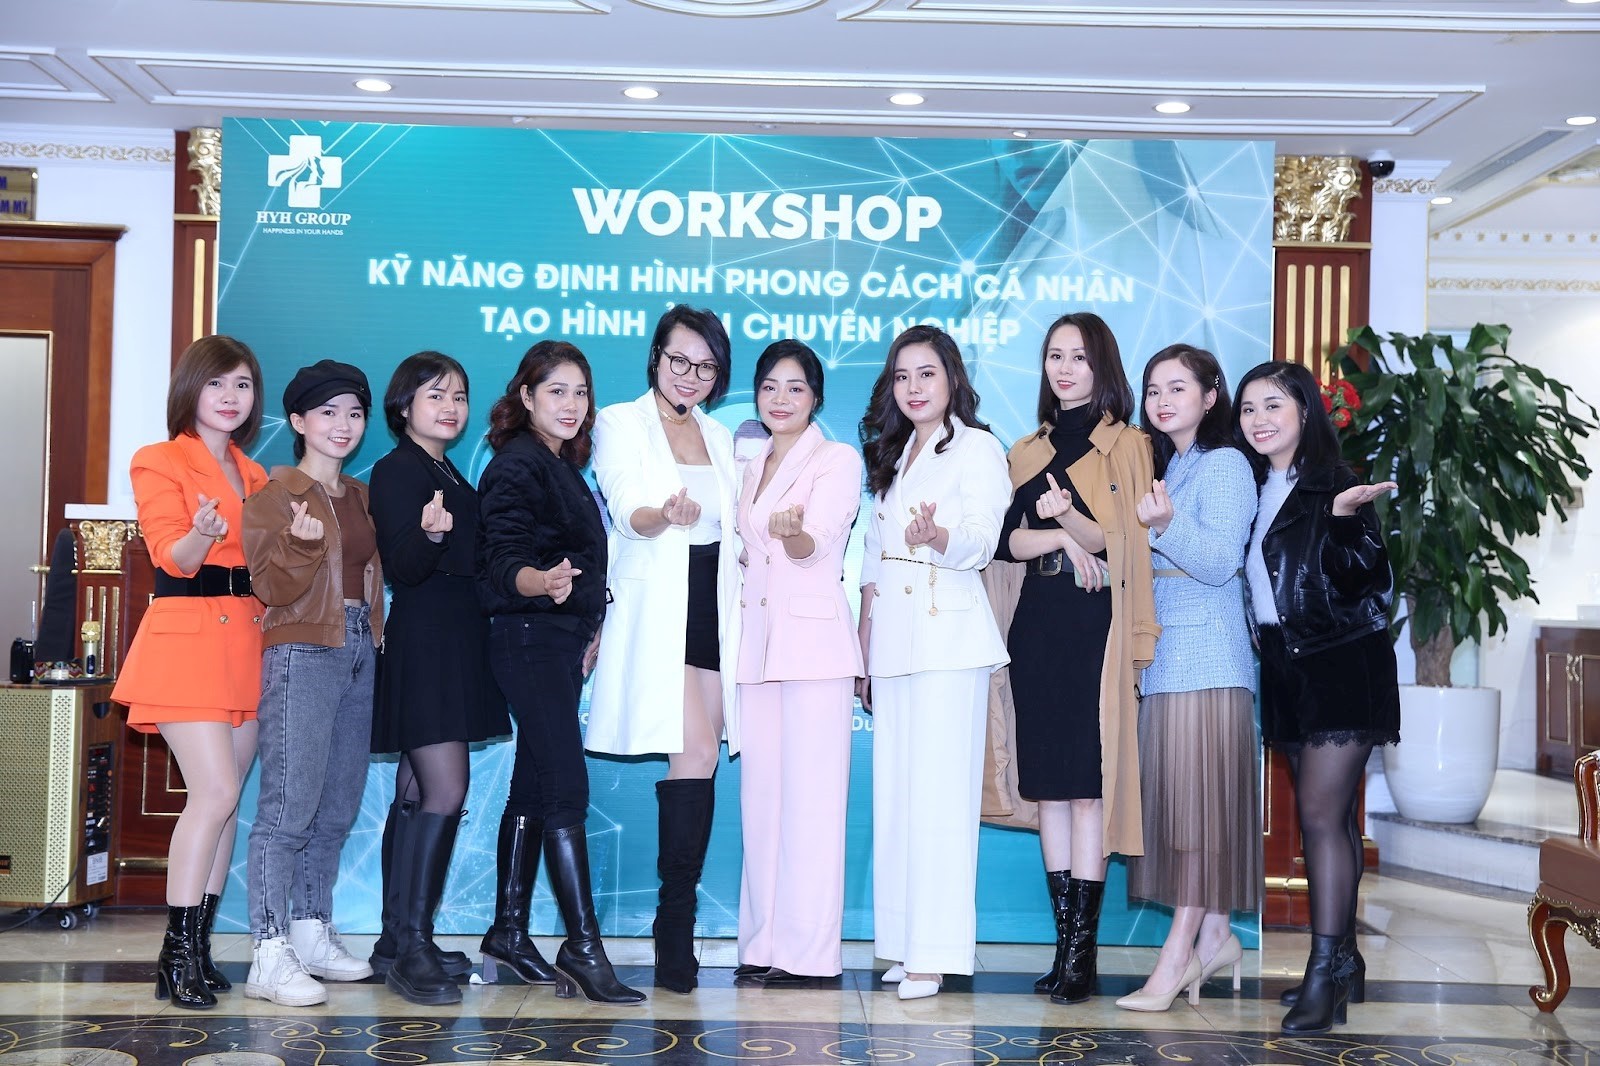 Tập Đoàn HYH Group tổ chức Workshop Kỹ Năng Định Hình Phong Cách Cá Nhân - Tạo Hình Ảnh Chuyên Nghiệp